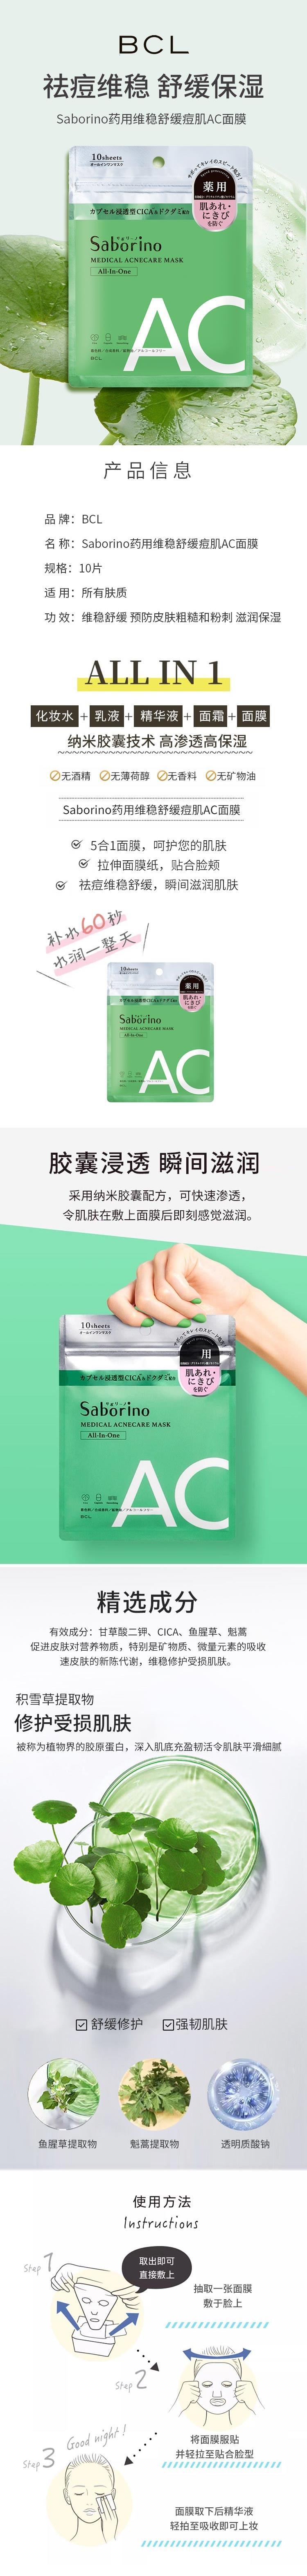 【日本直邮】BCL SABORINO 药用多效合一保湿护理AC抗痘面膜 10片